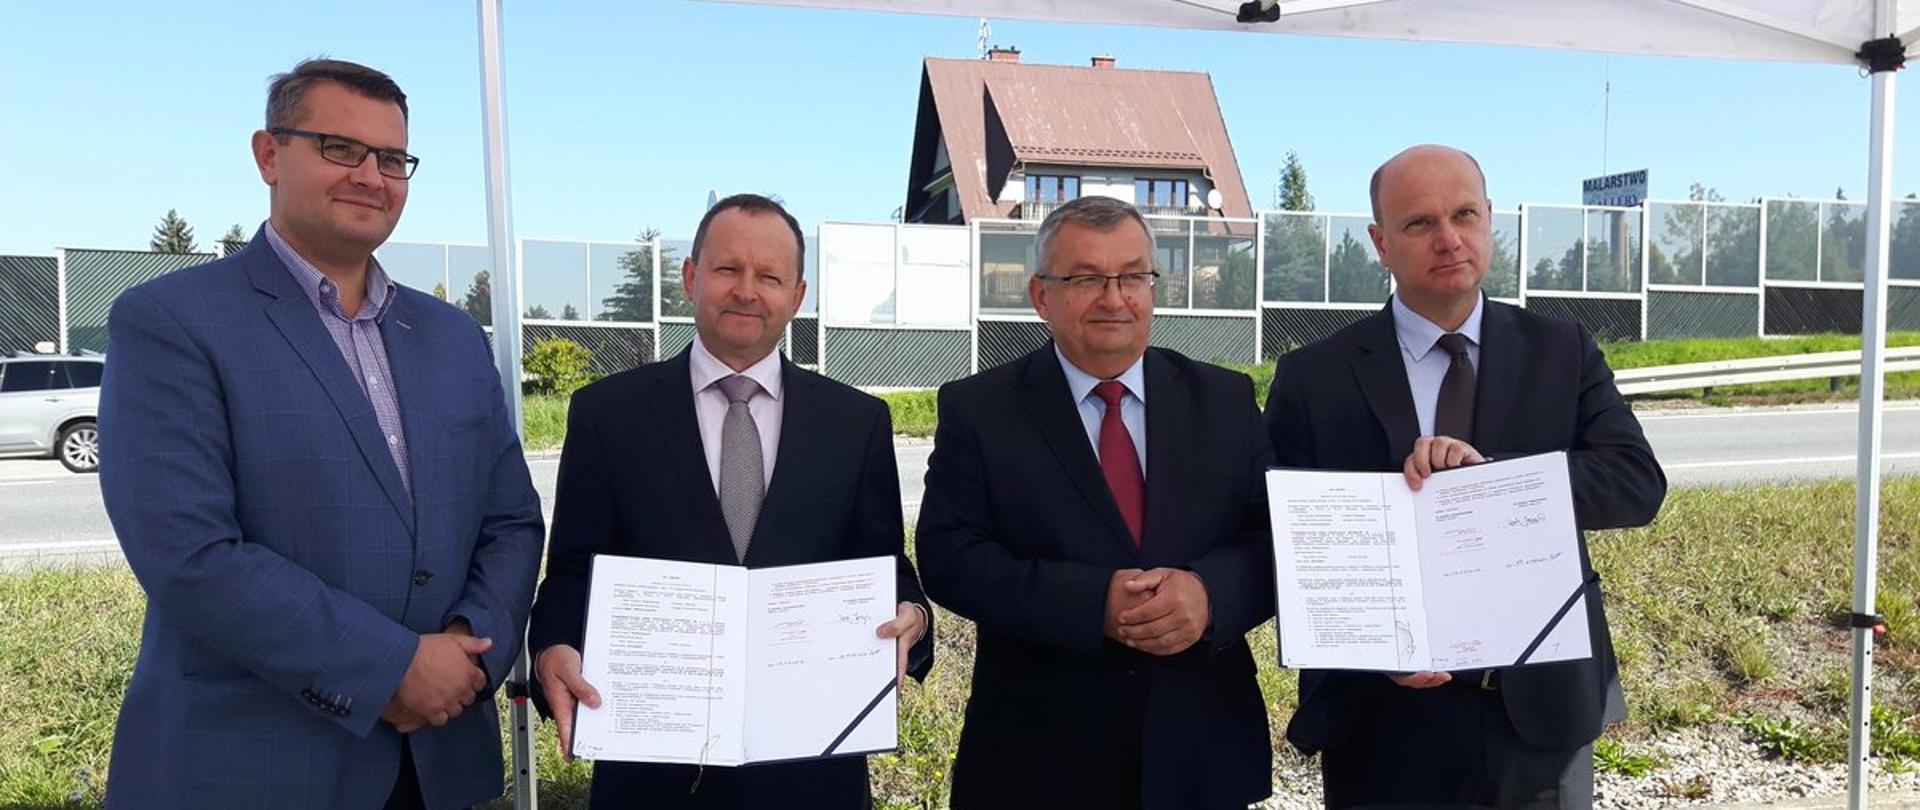 Podpisanie umowy na budowę drogi krajowej nr 47 przy udziale Ministra Infrastruktury Andrzeja Adamczyka